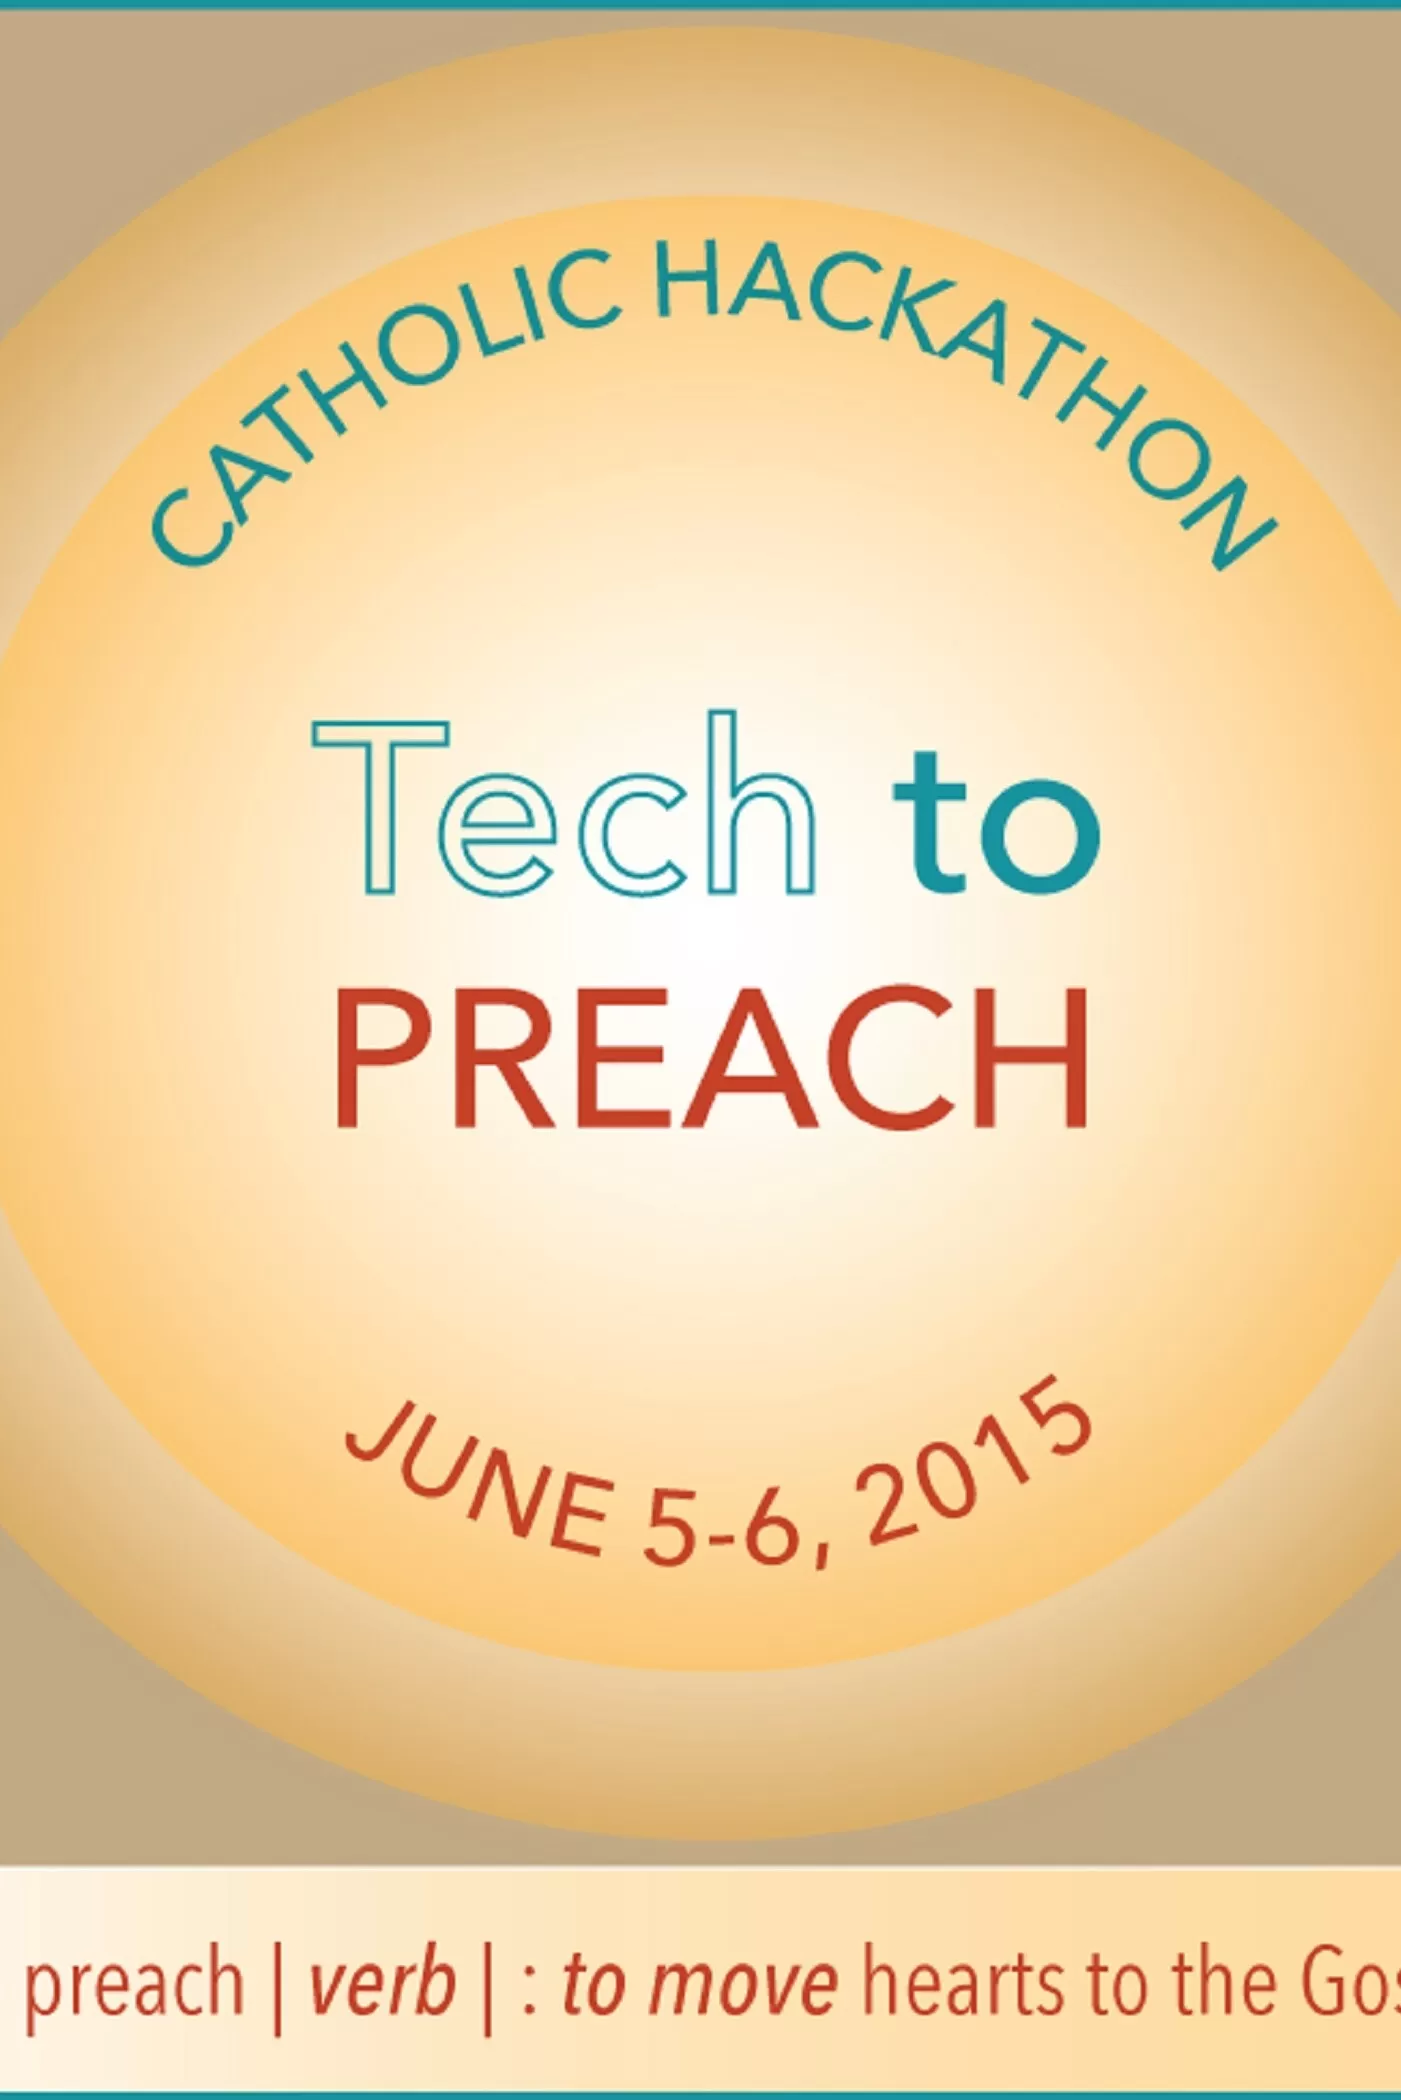 Tecnología para predicar - Hackathon católico